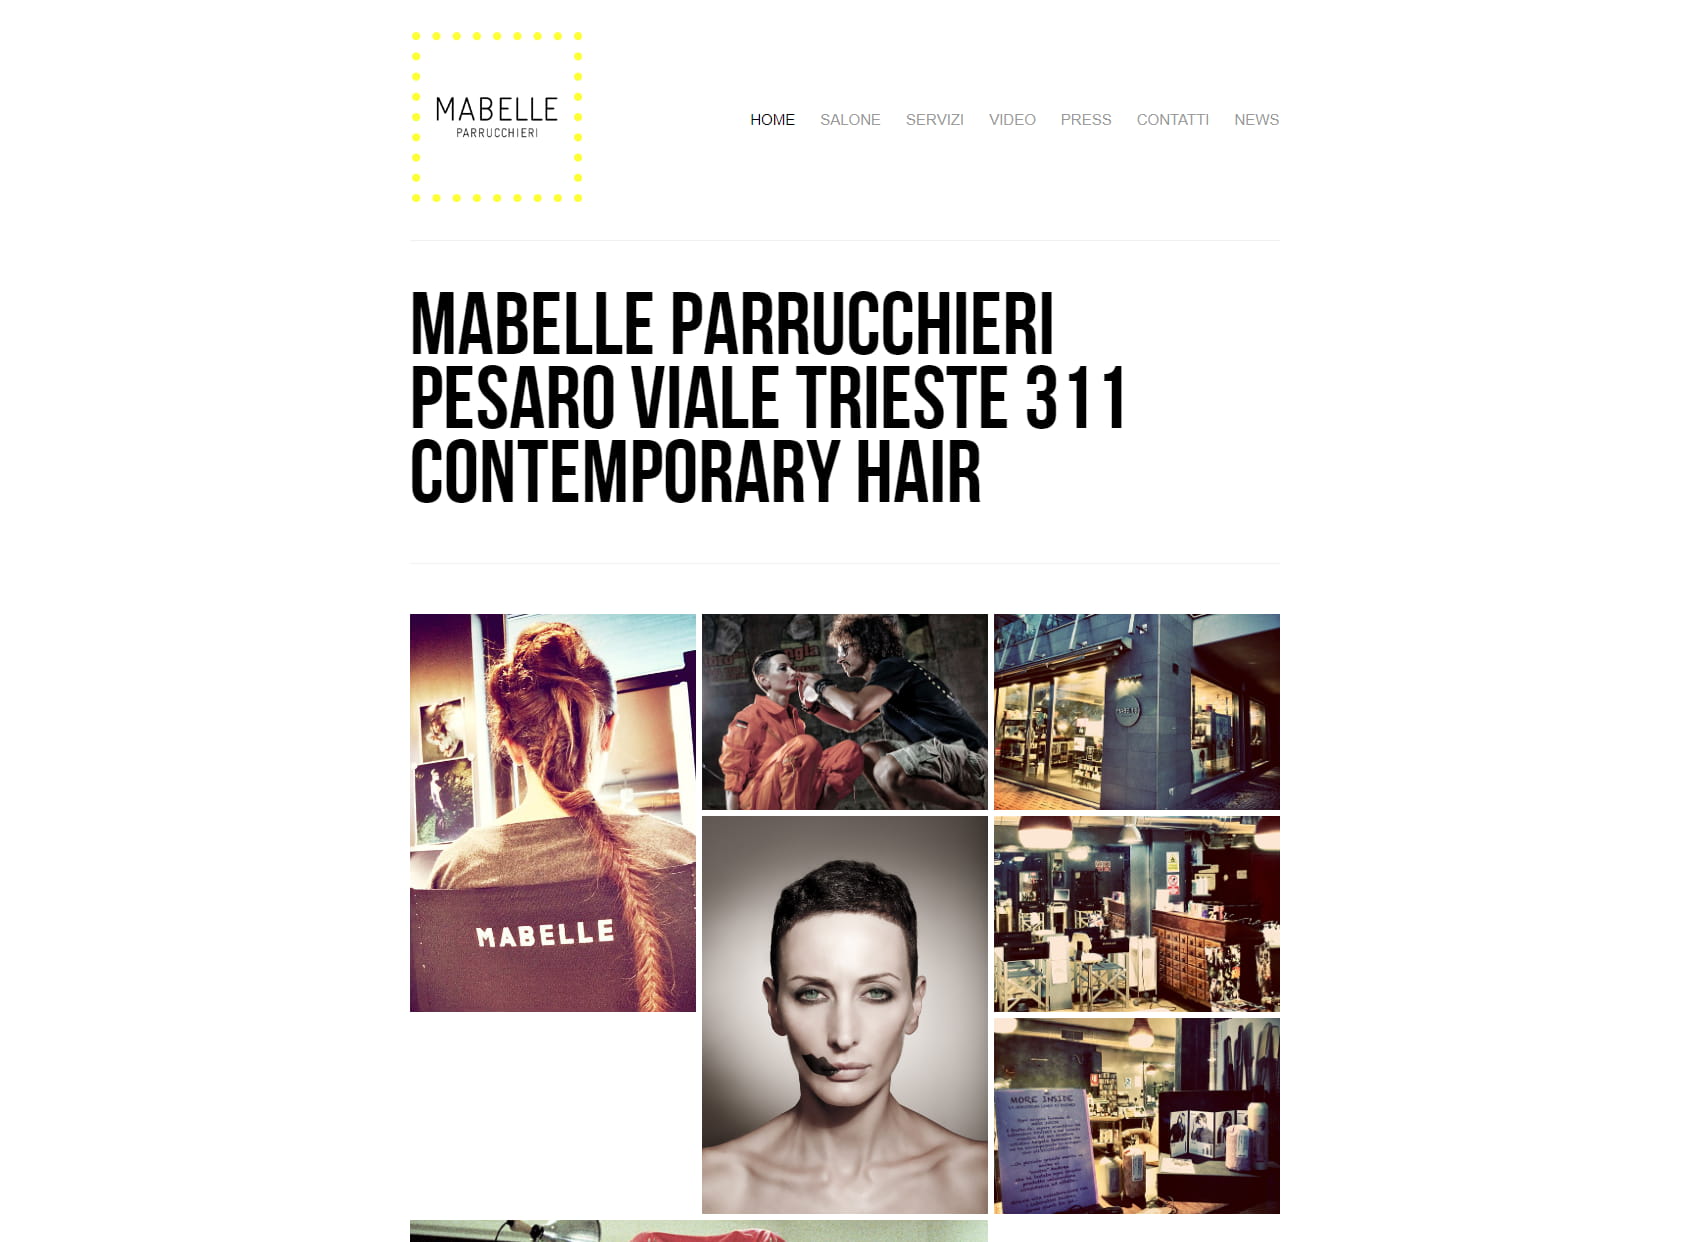 Mabelle Parrucchieri